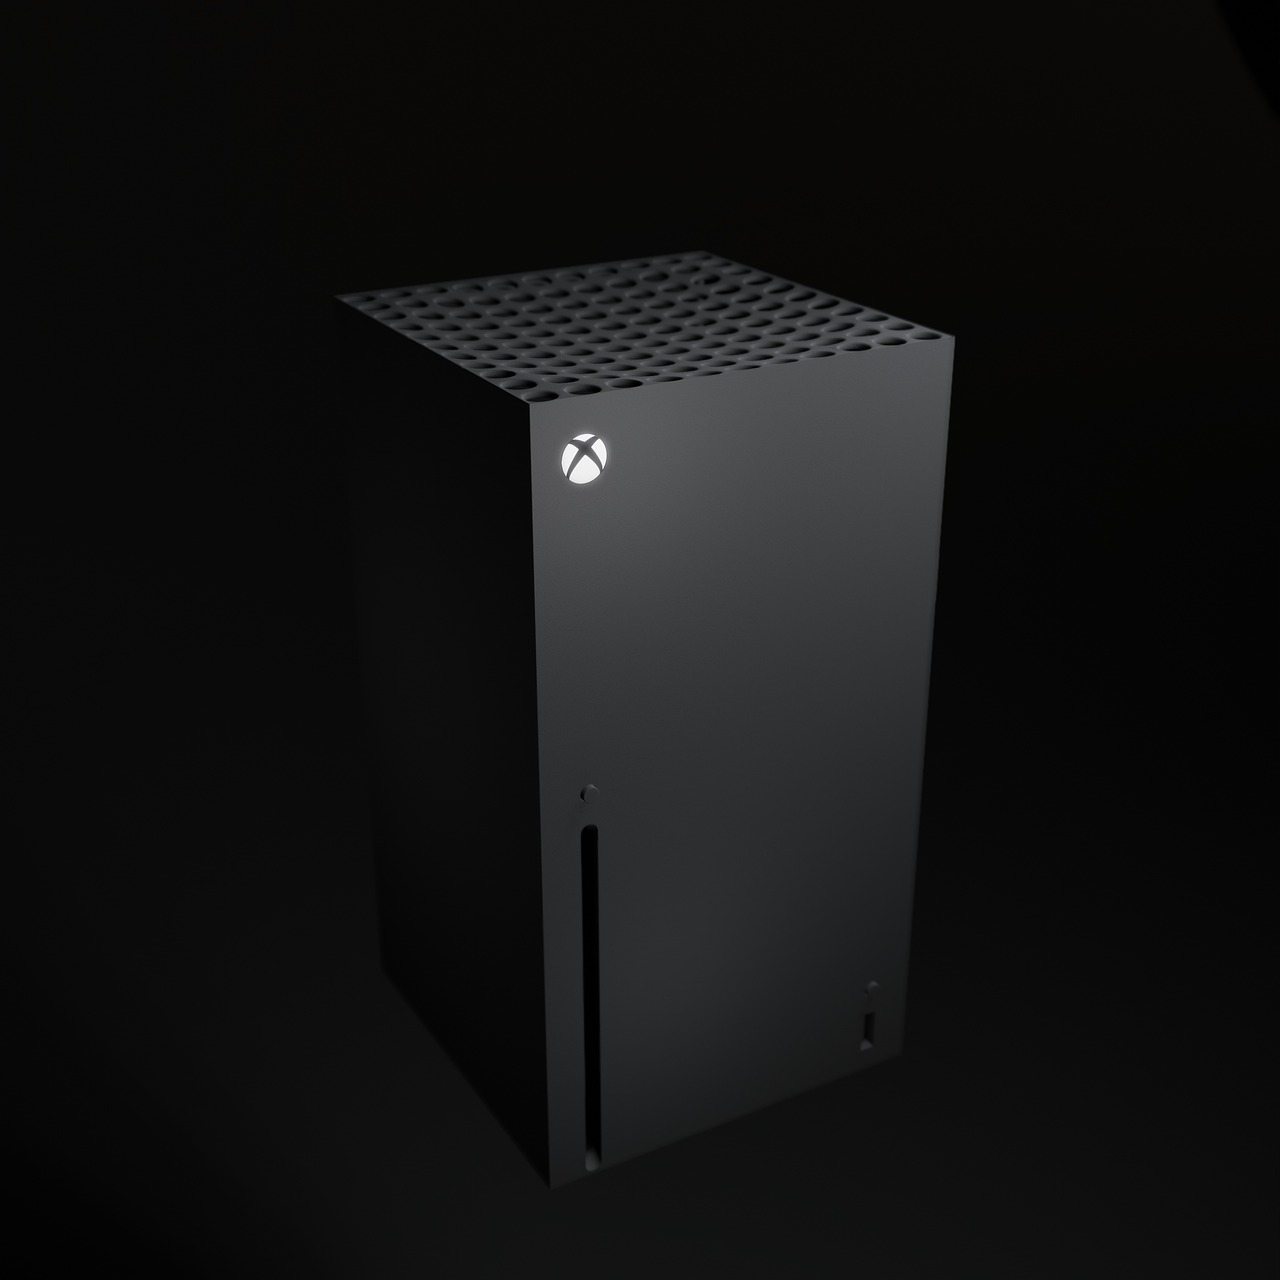  Les Xbox Series X | S font le plein de nouveautés